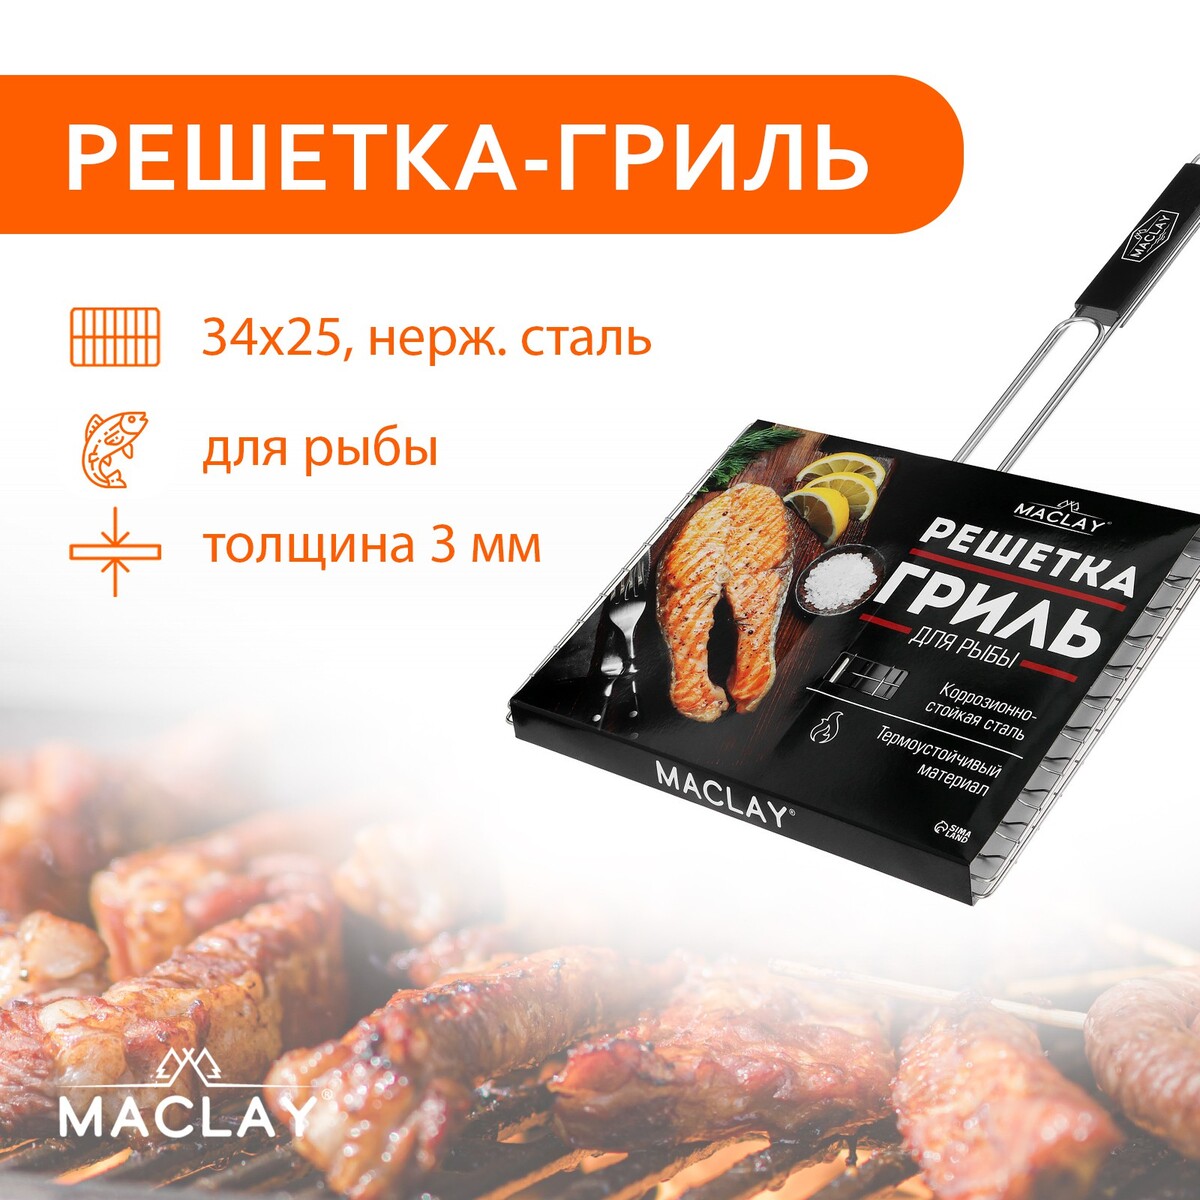 Решетка гриль maclay premium, 57х34х25 см, для рыбы, двойная, нержавеющая сталь решетка гриль для мяса maclay premium хромированная сталь 57x31 см рабочая поверхность 31x28 см